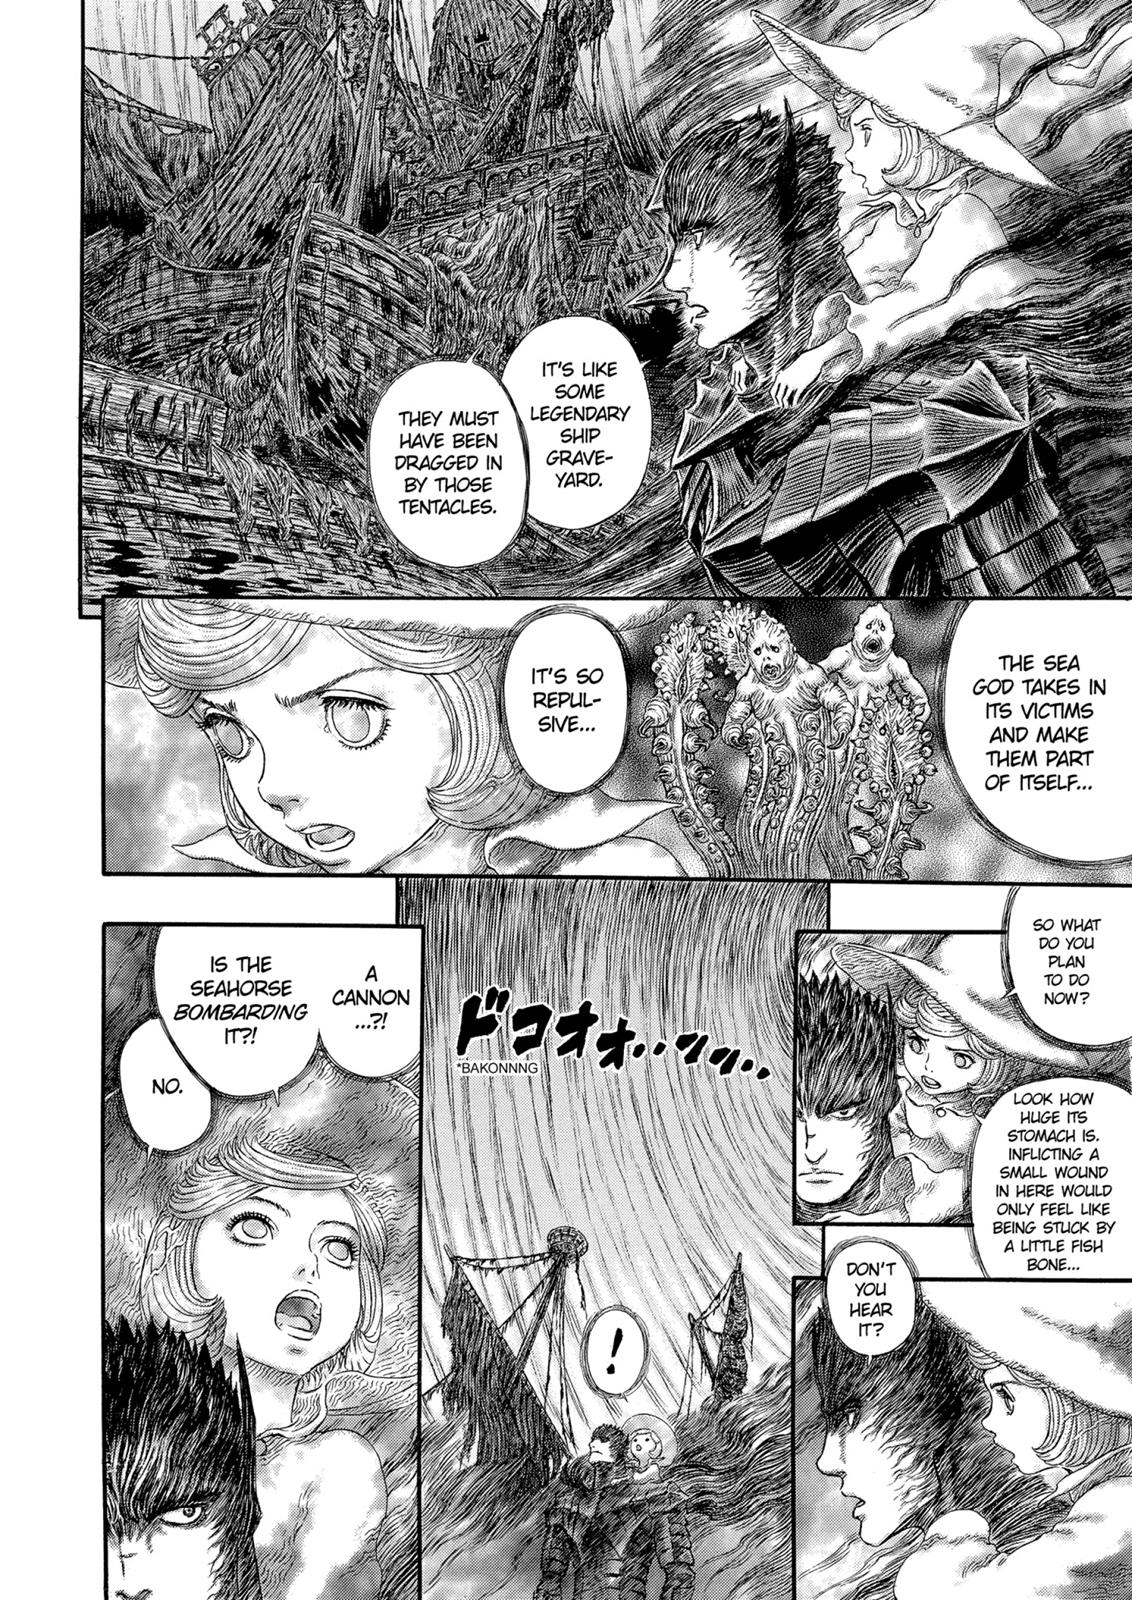 Berserk Manga Chapter 320 image 09